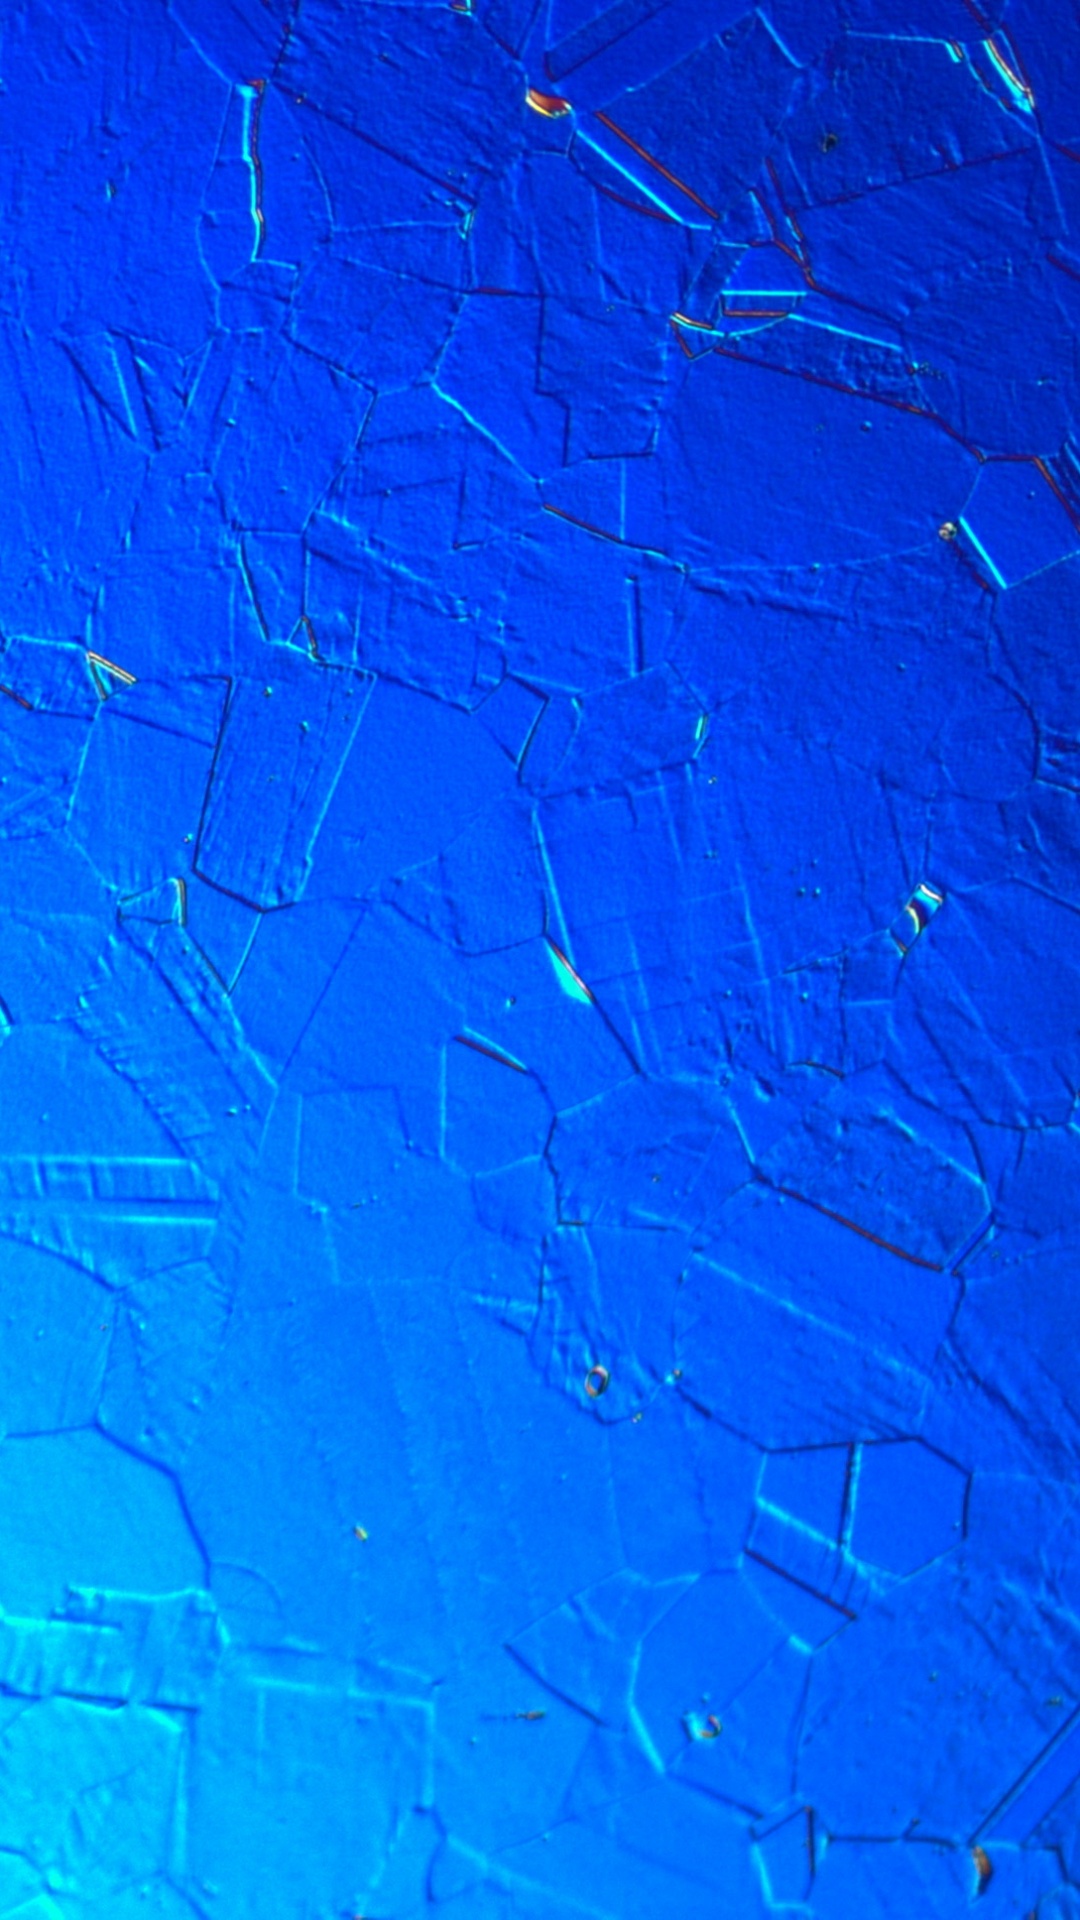 Mur Peint en Bleu et Blanc. Wallpaper in 1080x1920 Resolution